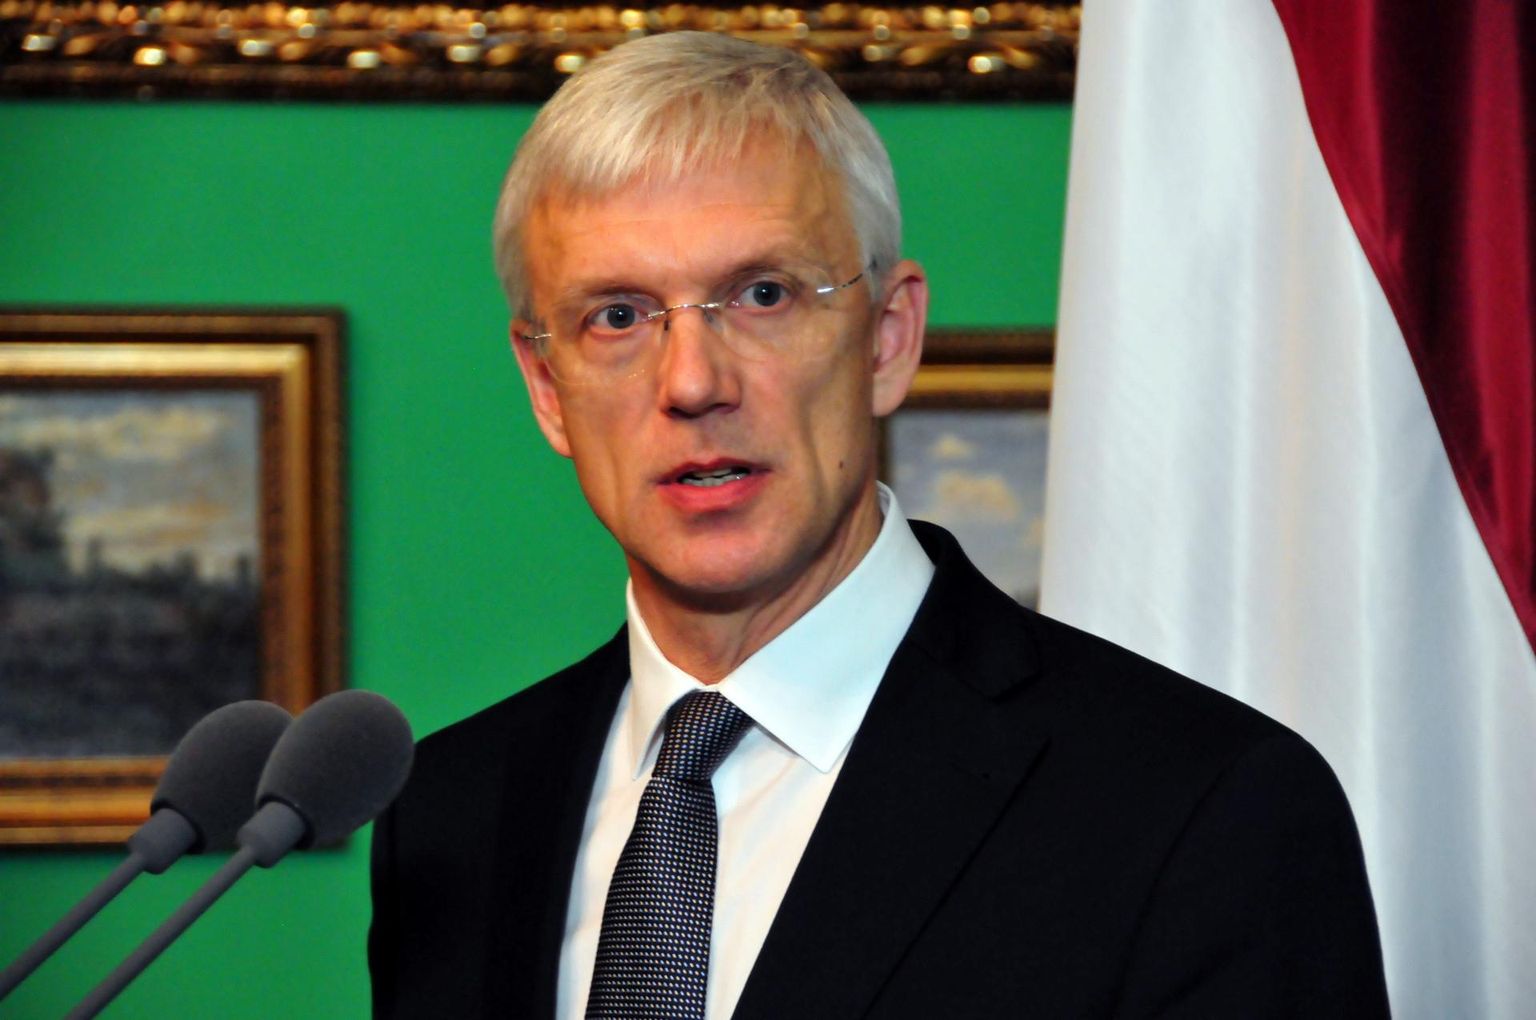 Krišjānis Kariņš esindab Lätit europarlamendis 2009. aastast.